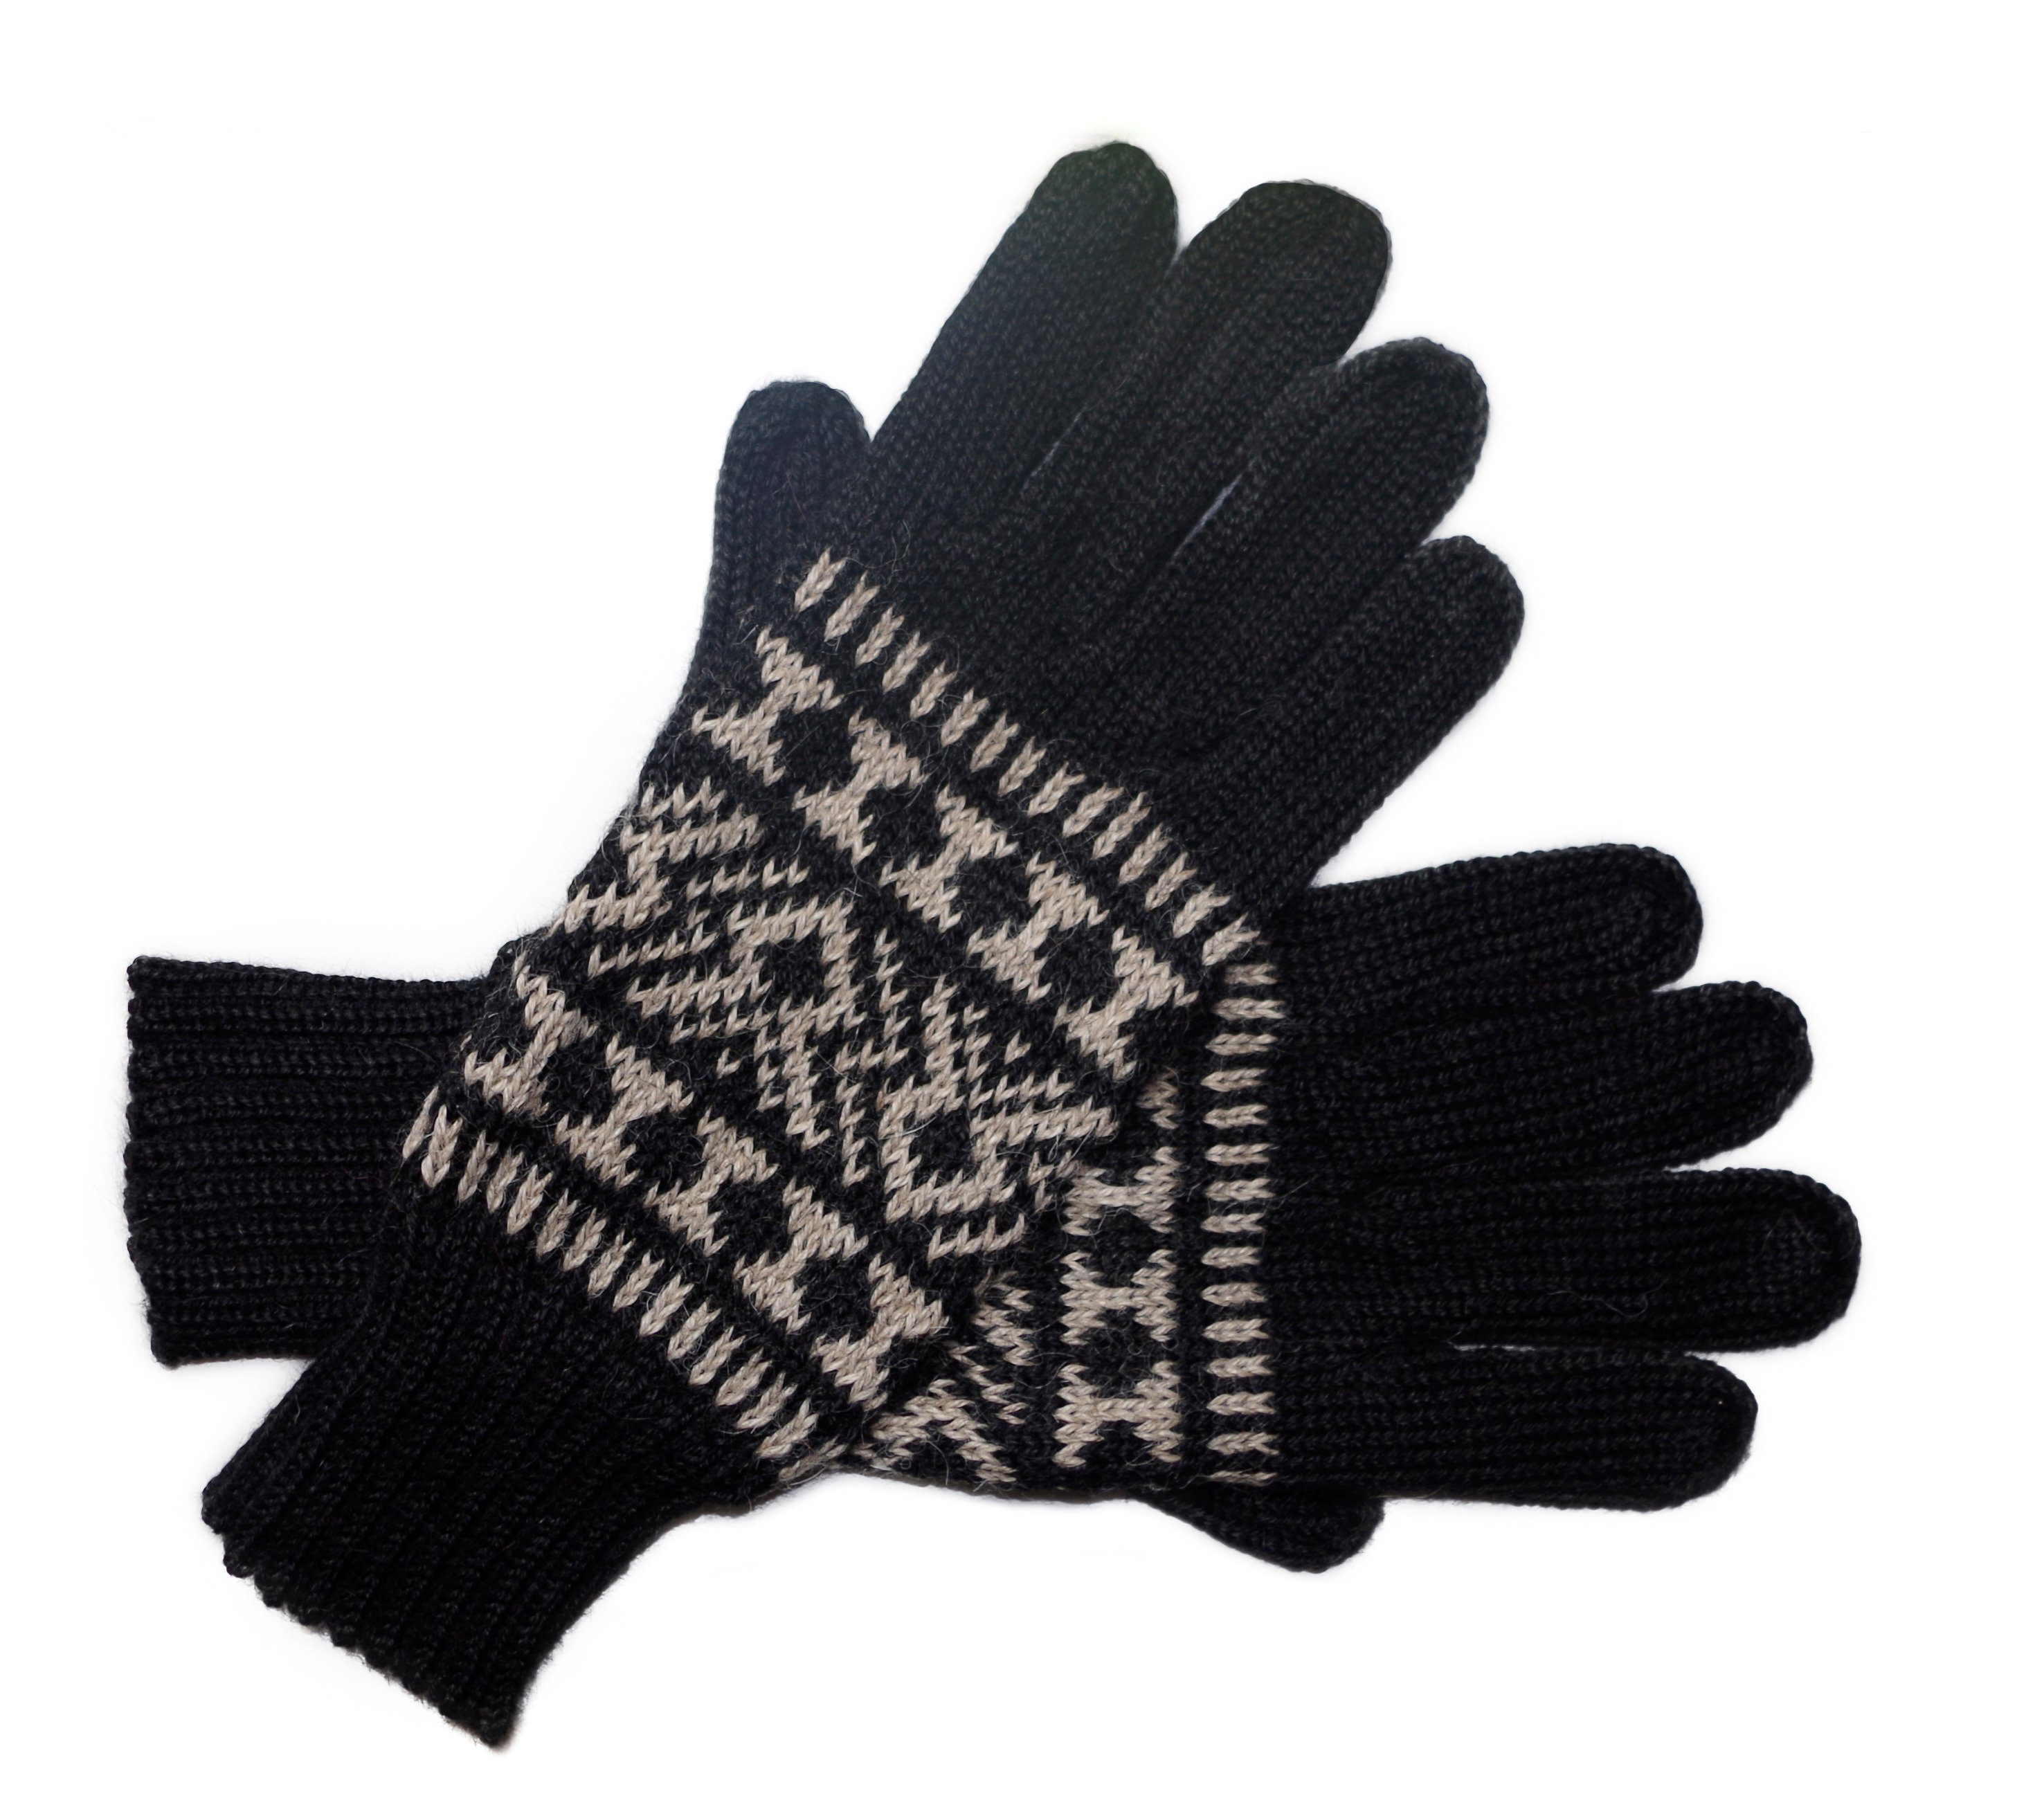 Fingerhandschuhe Guantofigura 100% Gear Posh schwarz aus Alpakawolle Strickhandschuhe